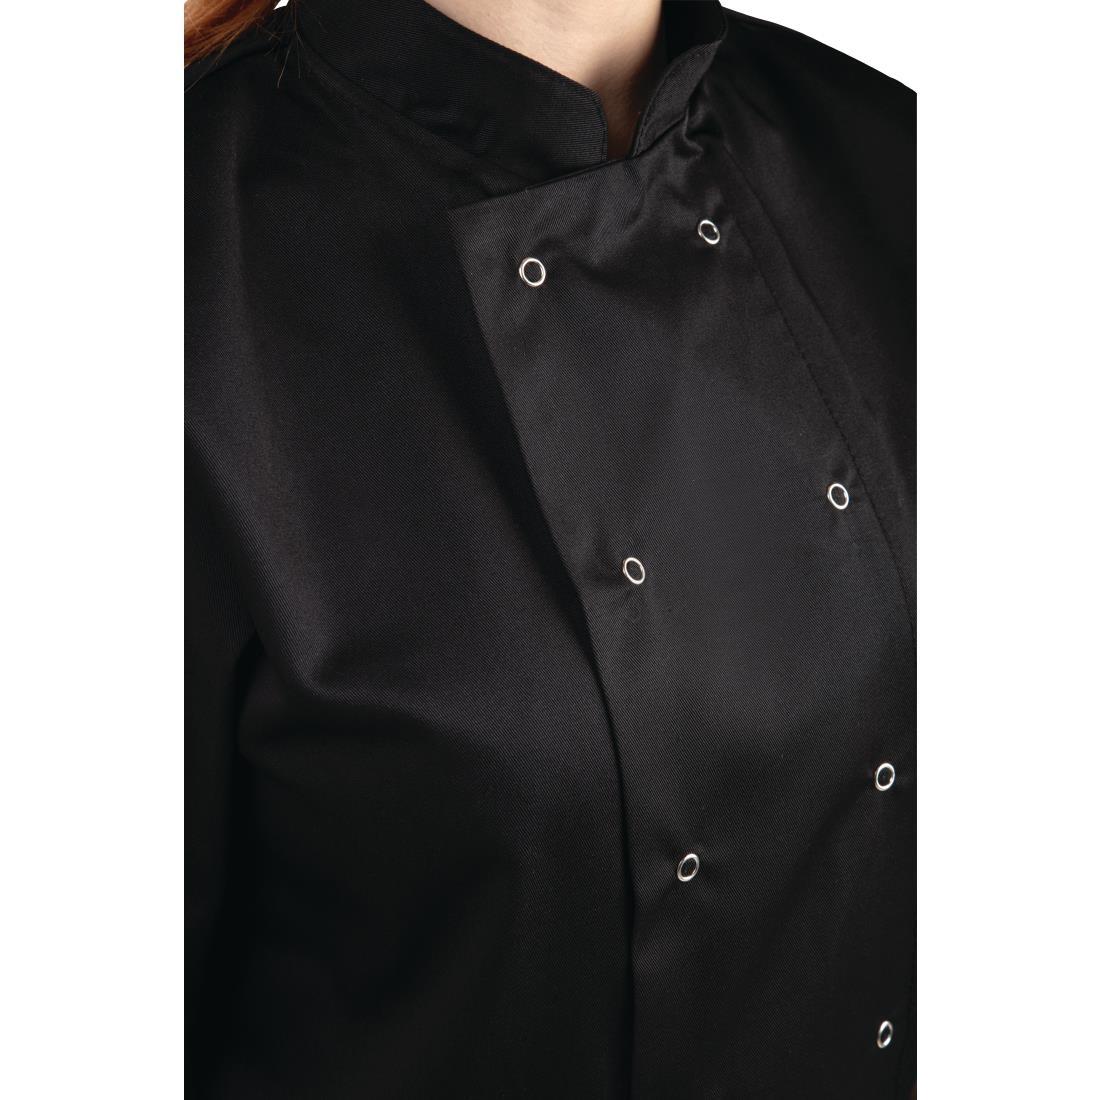 Whites Vegas Unisex Chefs Jacket Short Sleeve Black 4XL - A439-4XL  - 3